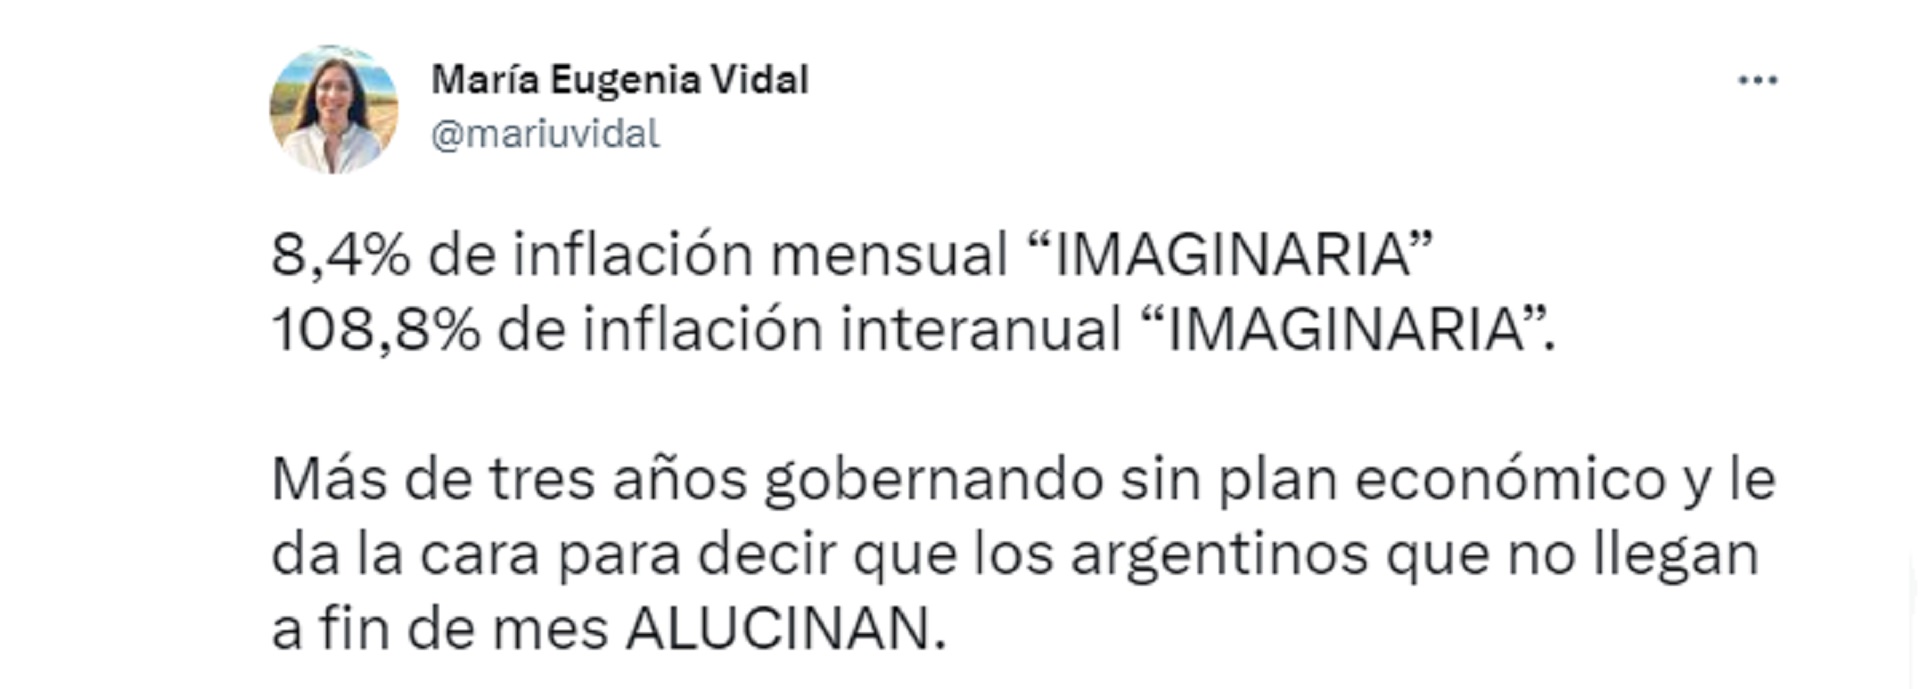 María Eugenia Vidal - Inflación